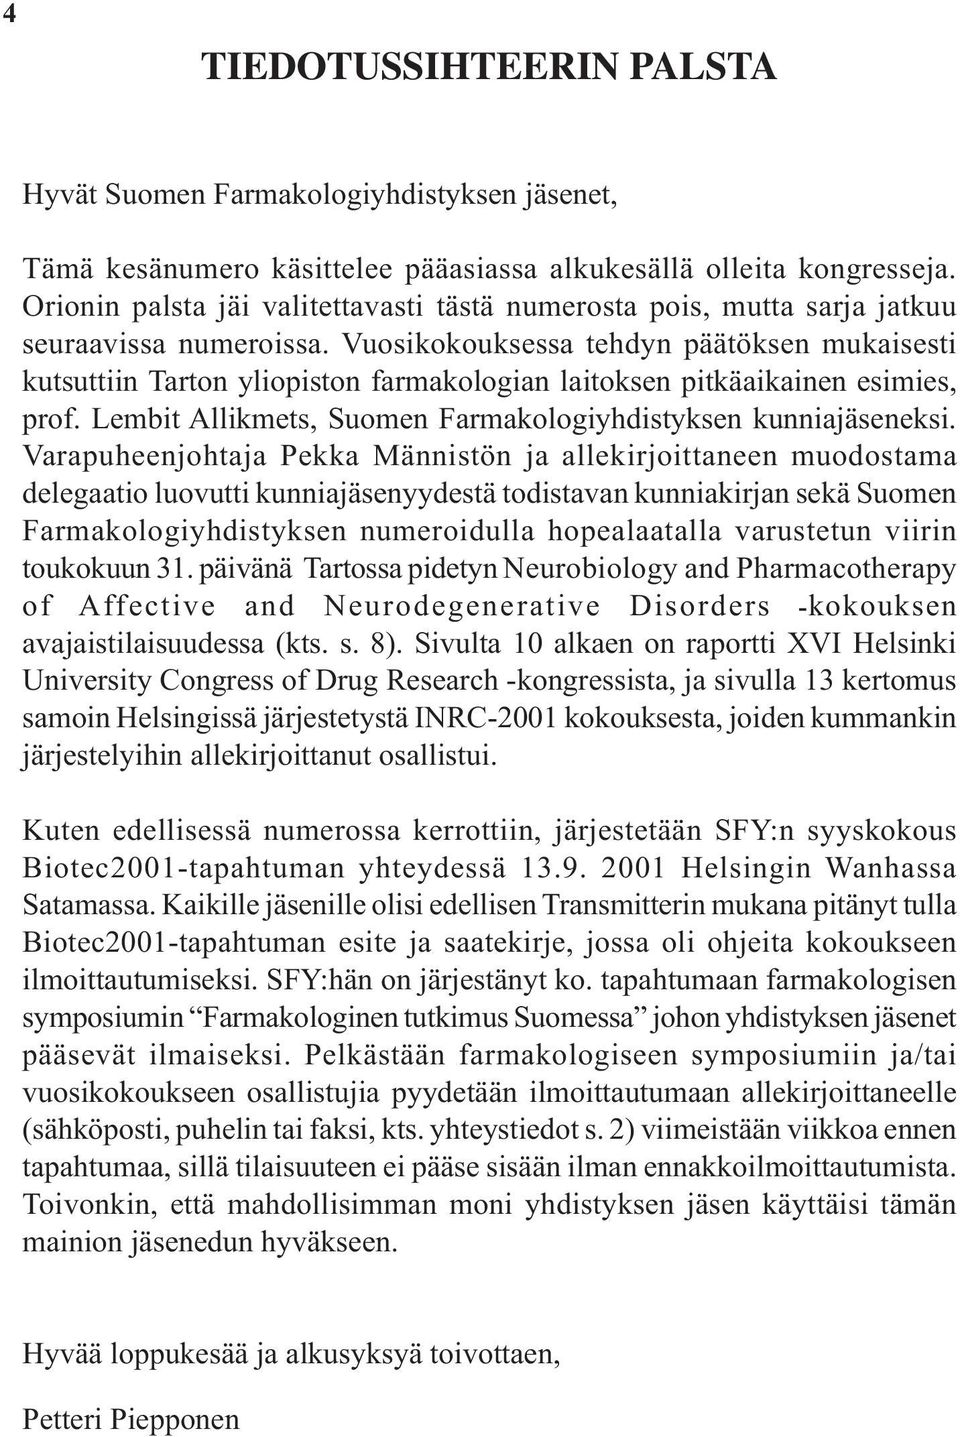 Vuosikokouksessa tehdyn päätöksen mukaisesti kutsuttiin Tarton yliopiston farmakologian laitoksen pitkäaikainen esimies, prof. Lembit Allikmets, Suomen Farmakologiyhdistyksen kunniajäseneksi.